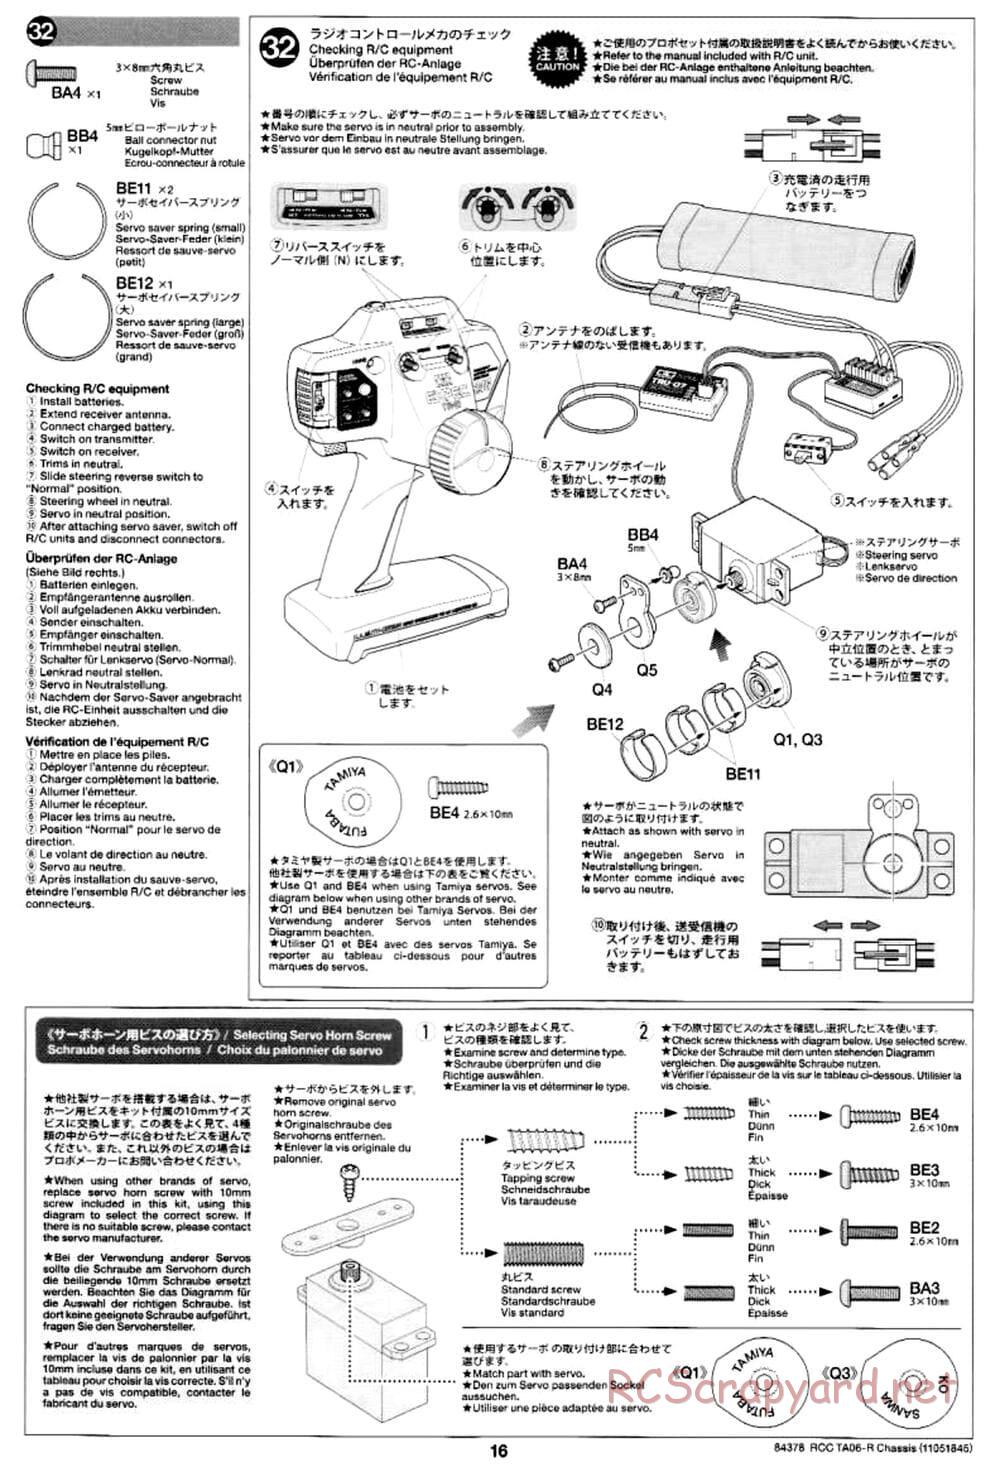 Tamiya - TA06-R Chassis - Manual - Page 16